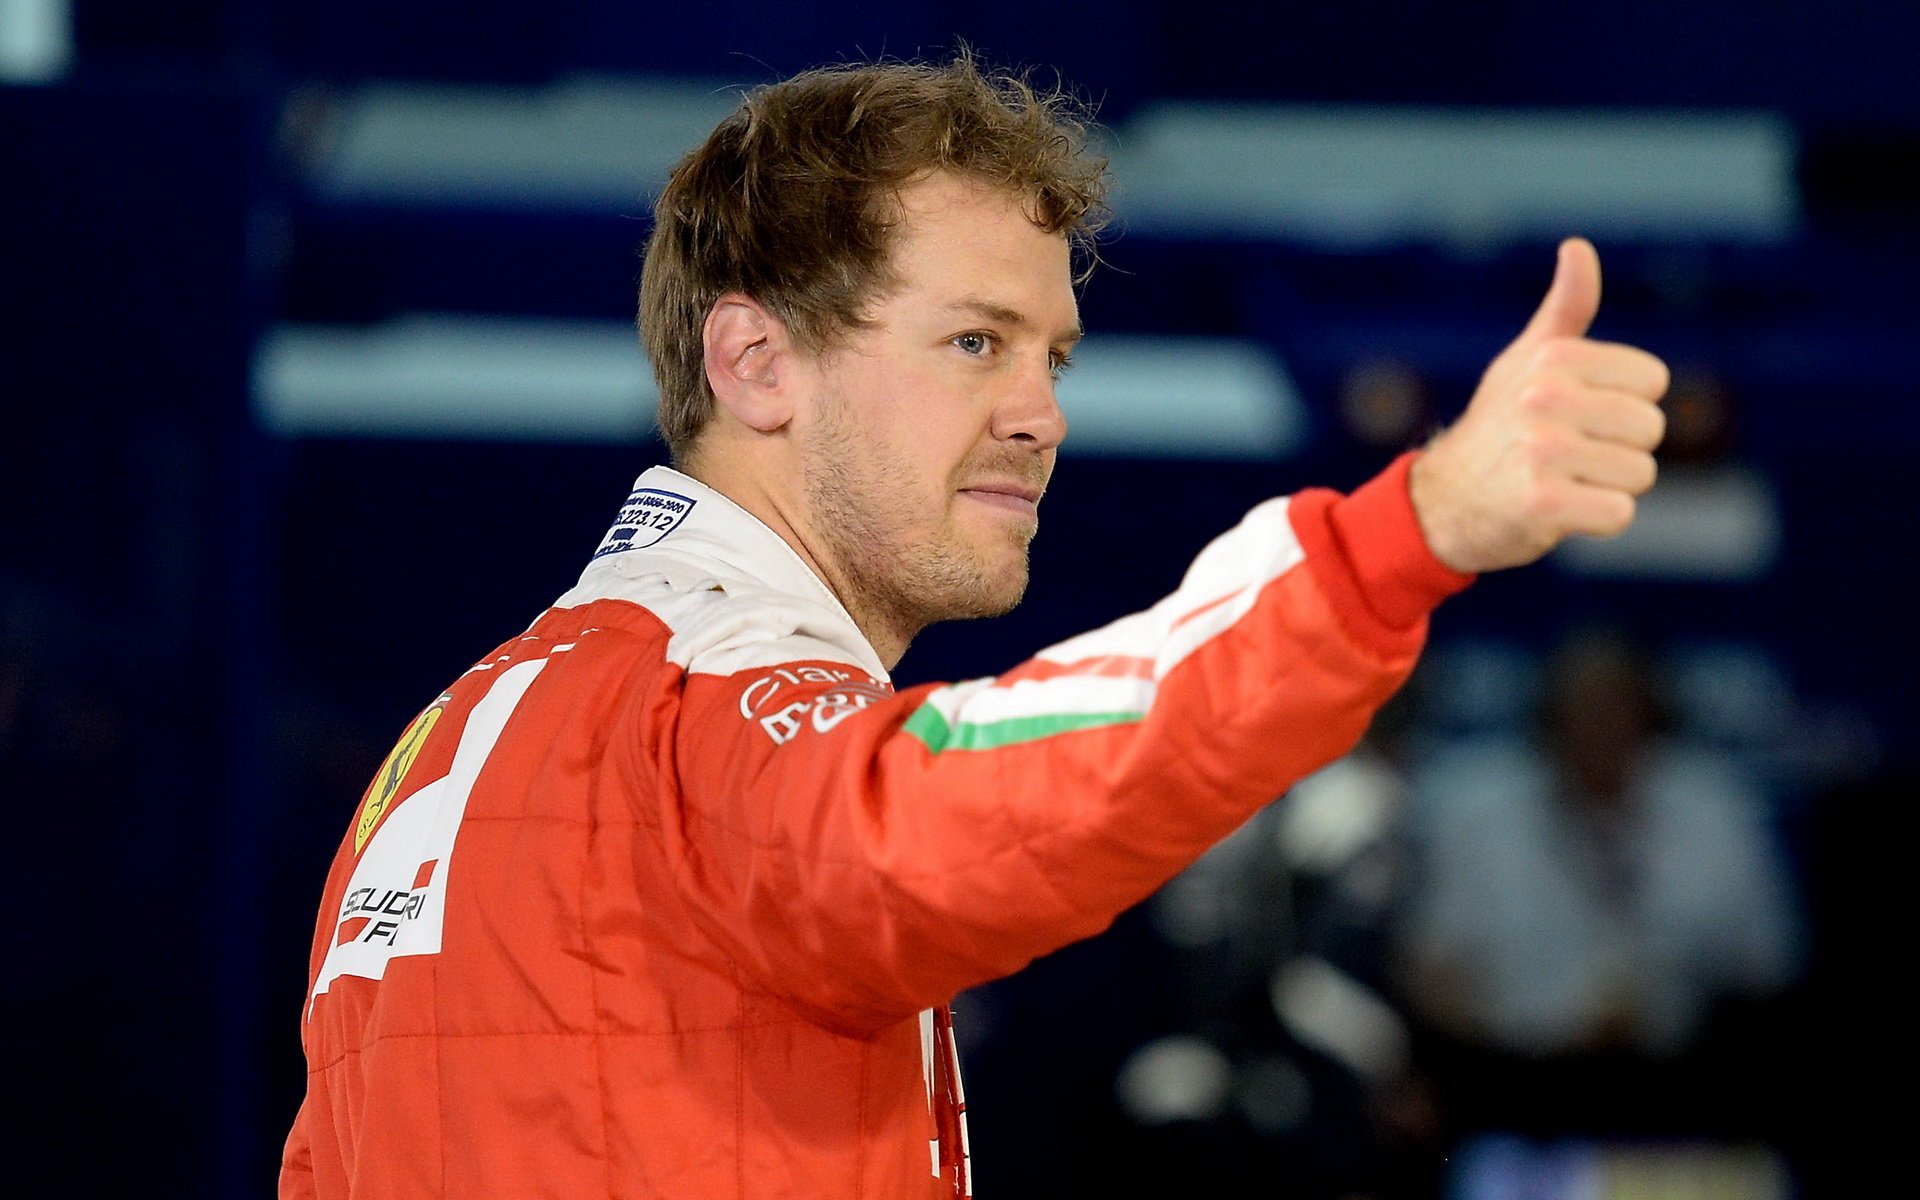 Byl by Sebastian Vettel Mercedesům v závodě ještě blíže než jeho týmový kolega?